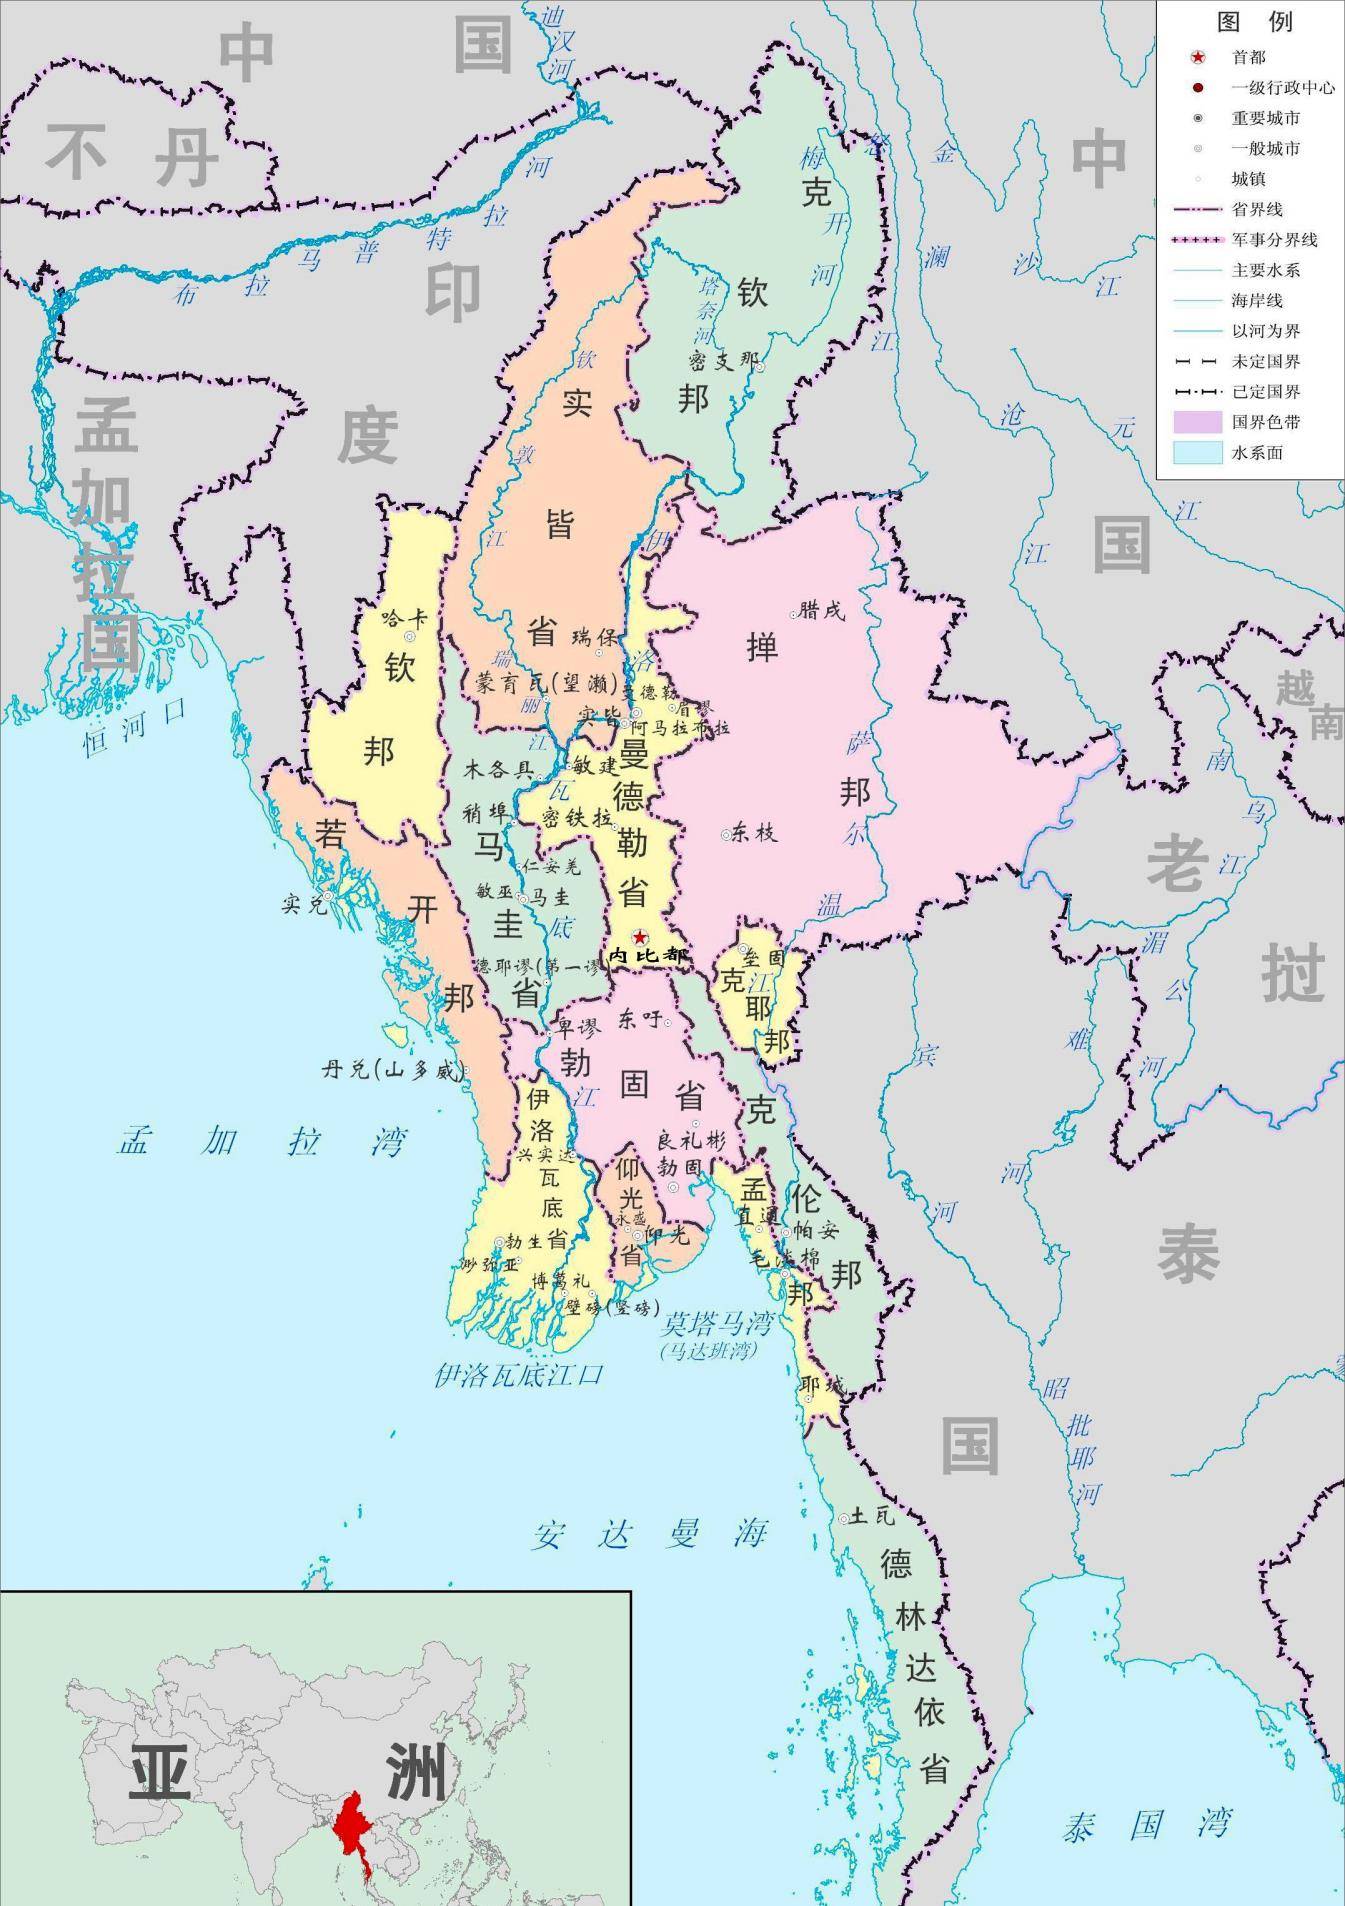 缅甸地区地图但是在想要继续占据缅甸地区的同时,英国人又非常矛盾